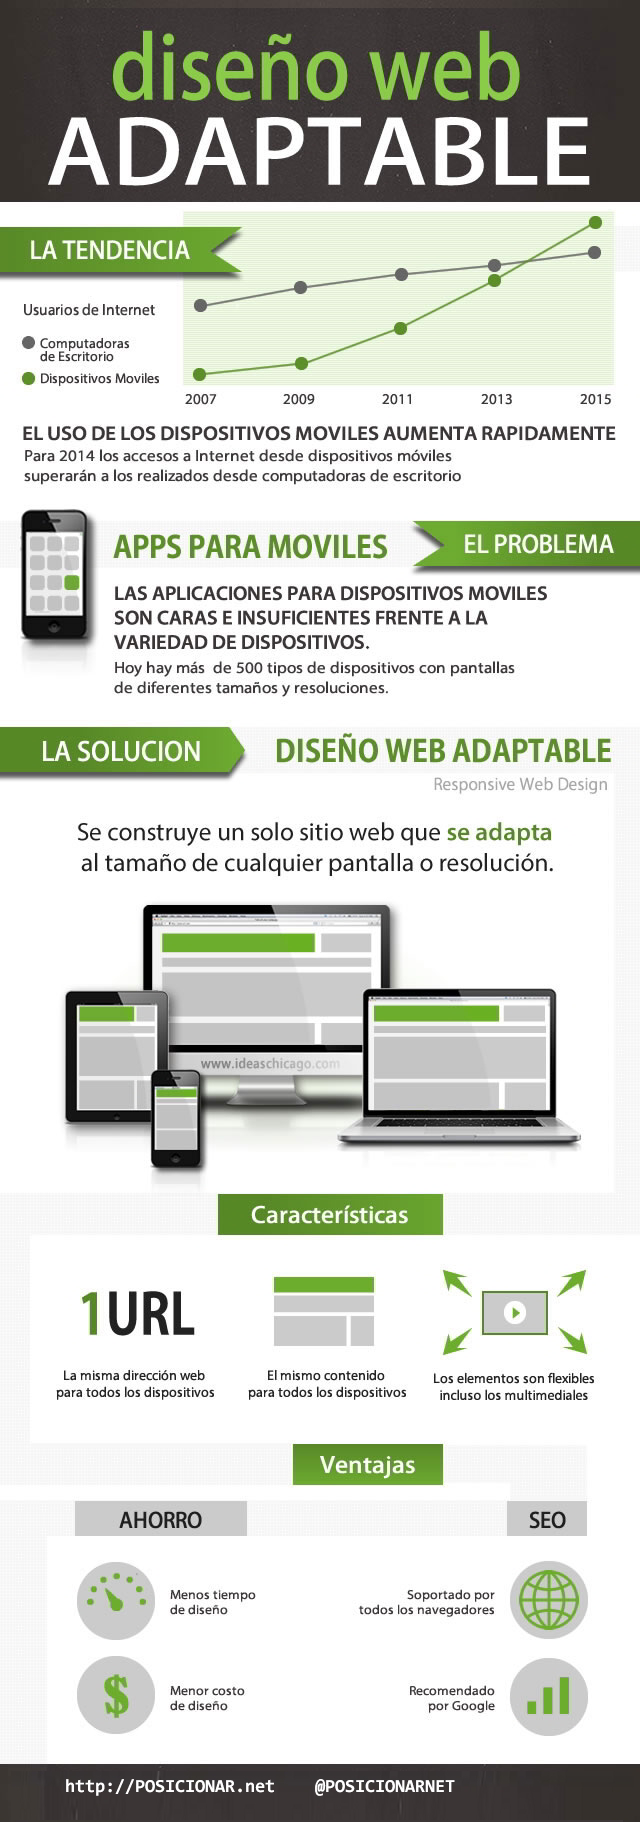 infografía-responsive-web-design